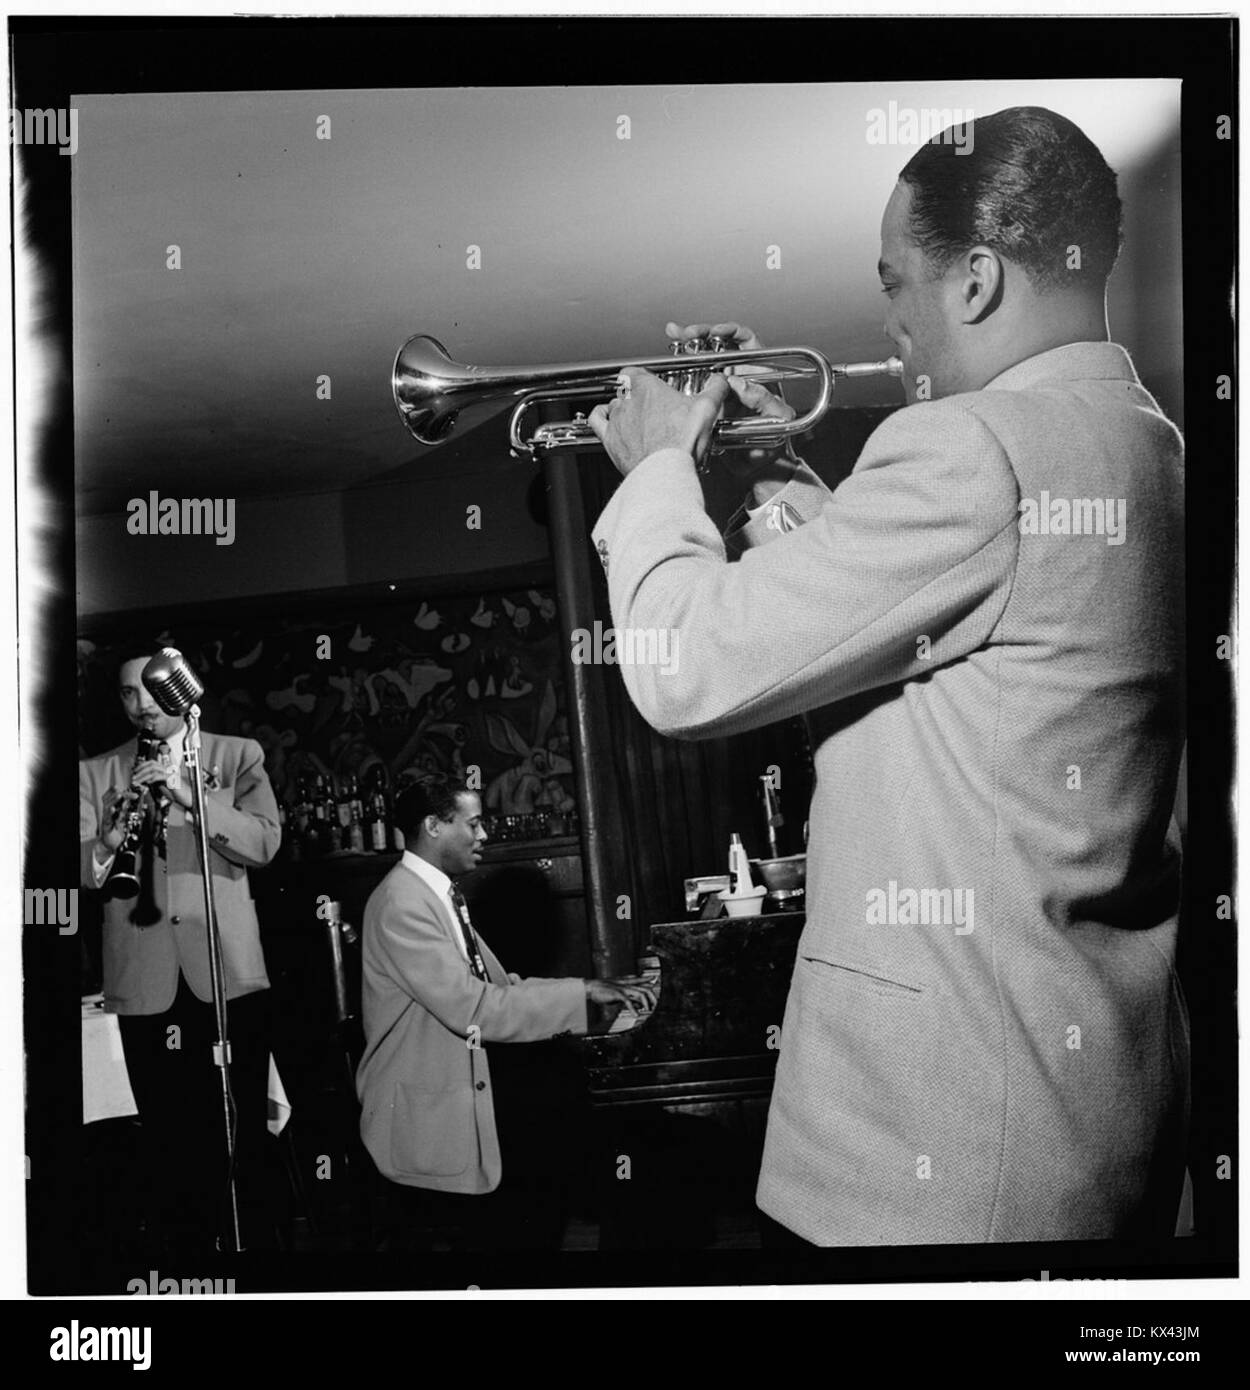 (Portrait de Scoville () Toby Browne, Kenny Kersey, et Buck Clayton, Café Society (centre-ville), New York, N.Y., ca. Juin 1947) (LOC) (5268902747) Banque D'Images